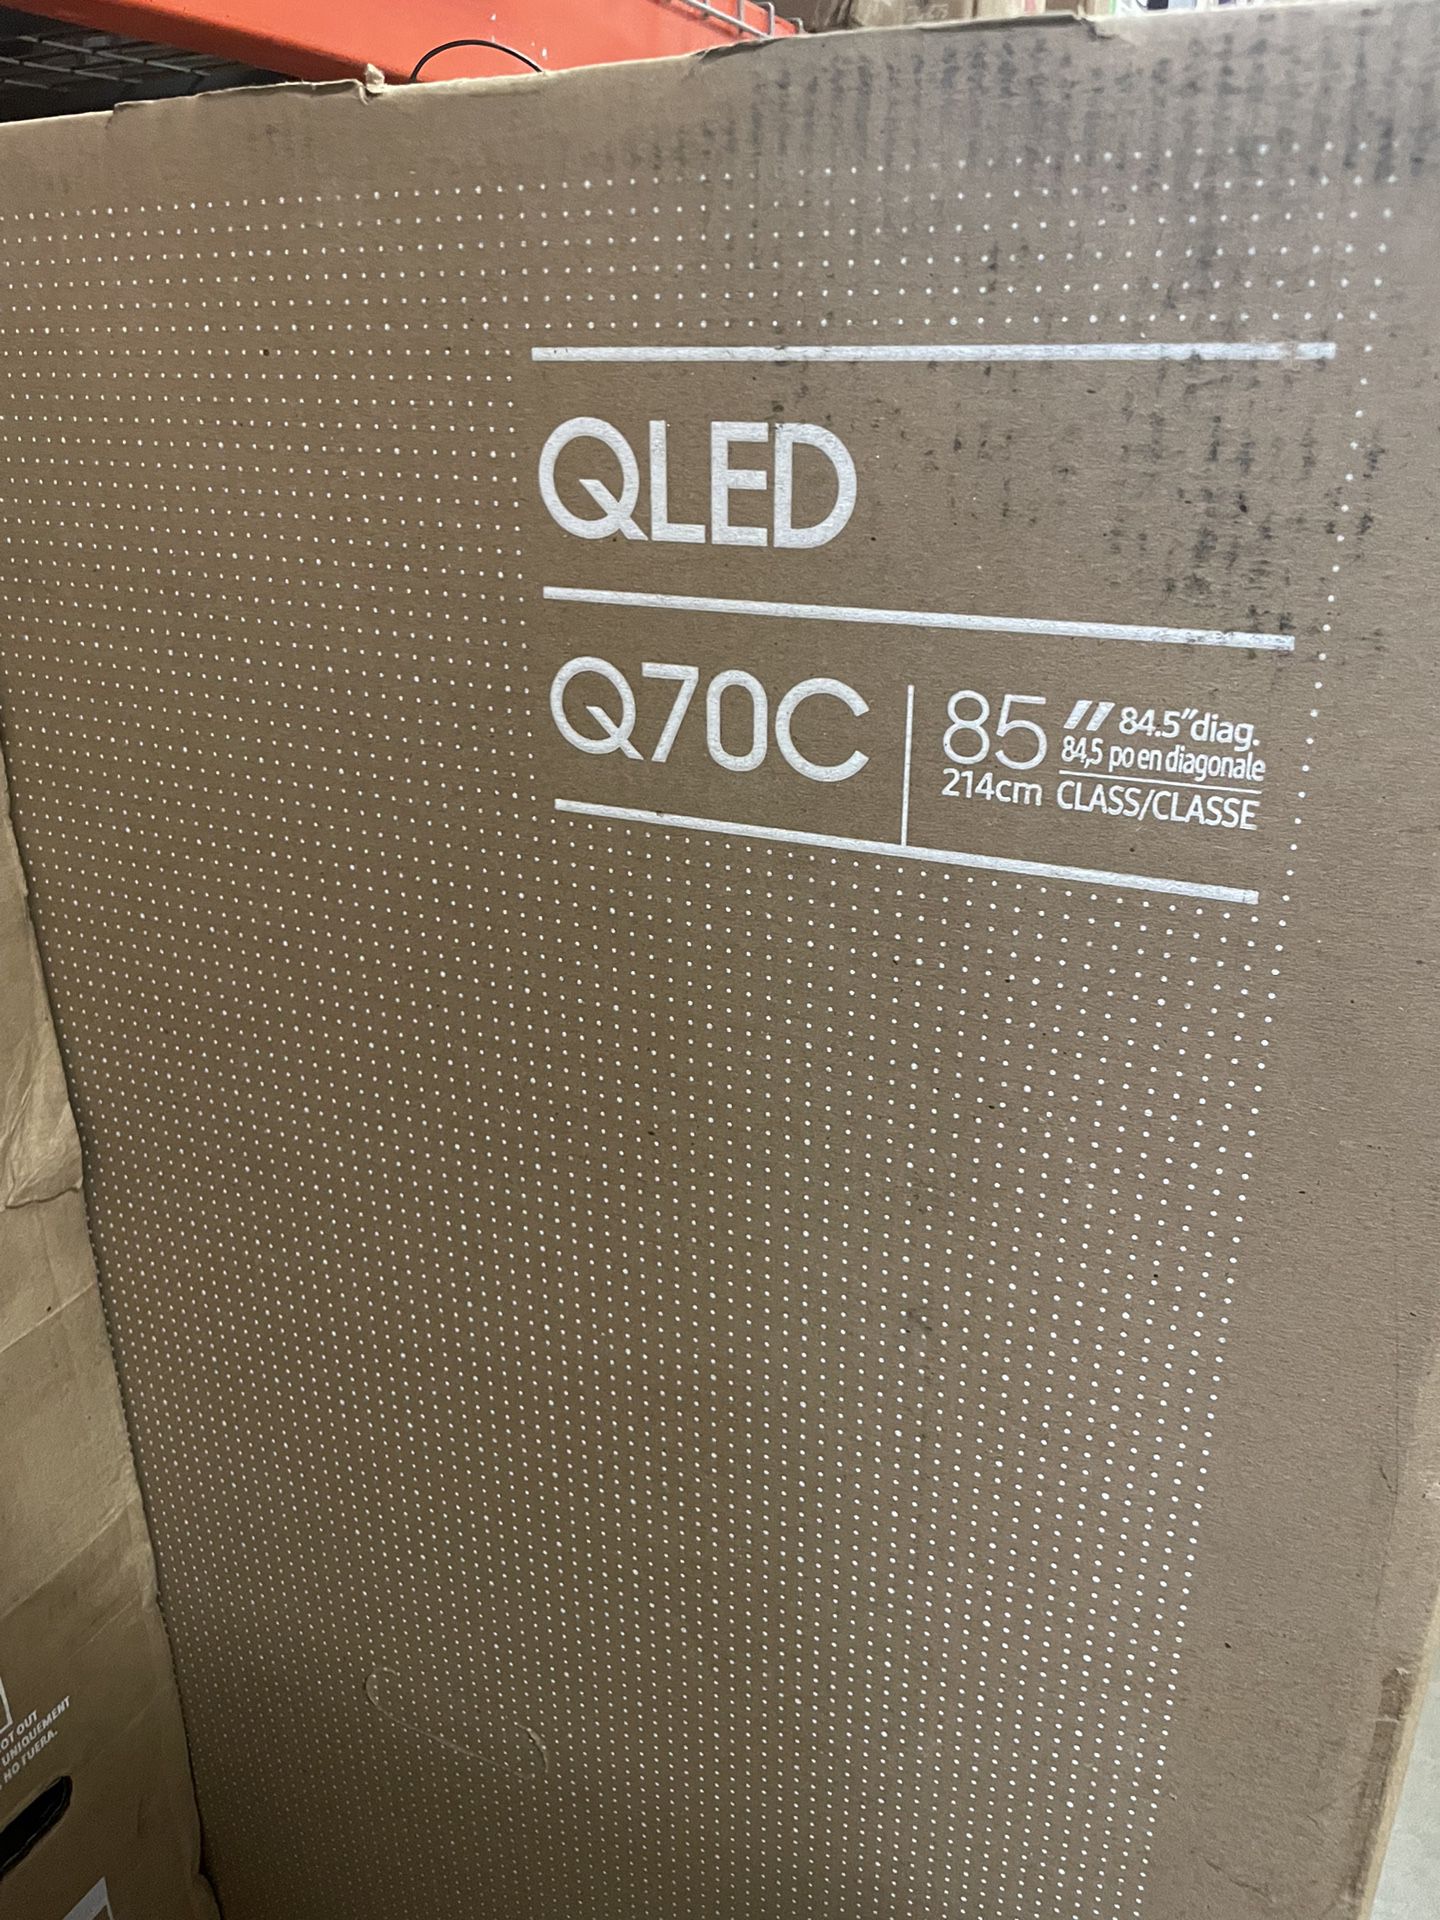 Samsung - 85" Class Q70C QLED 4K UHD Smart Tizen TV